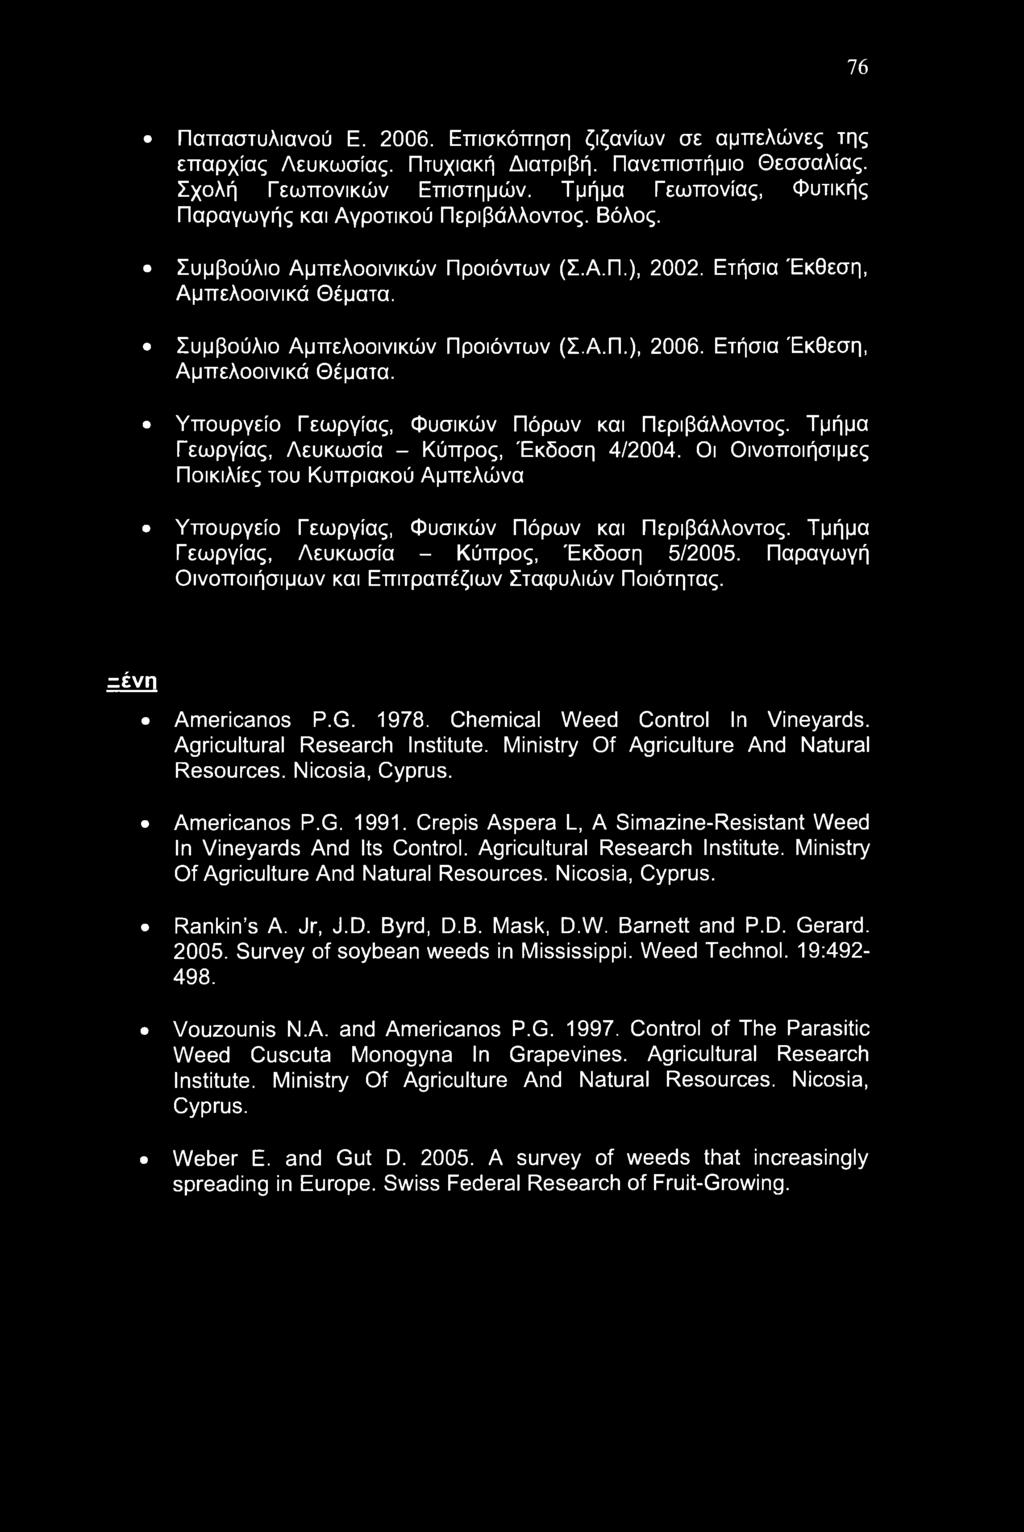 Ετήσια Έκθεση, Αμπελοοινικά Θέματα. Υπουργείο Γεωργίας, Φυσικών Πόρων και Περιβάλλοντος. Τμήμα Γεωργίας, Λευκωσία - Κύπρος, Έκδοση 4/2004.